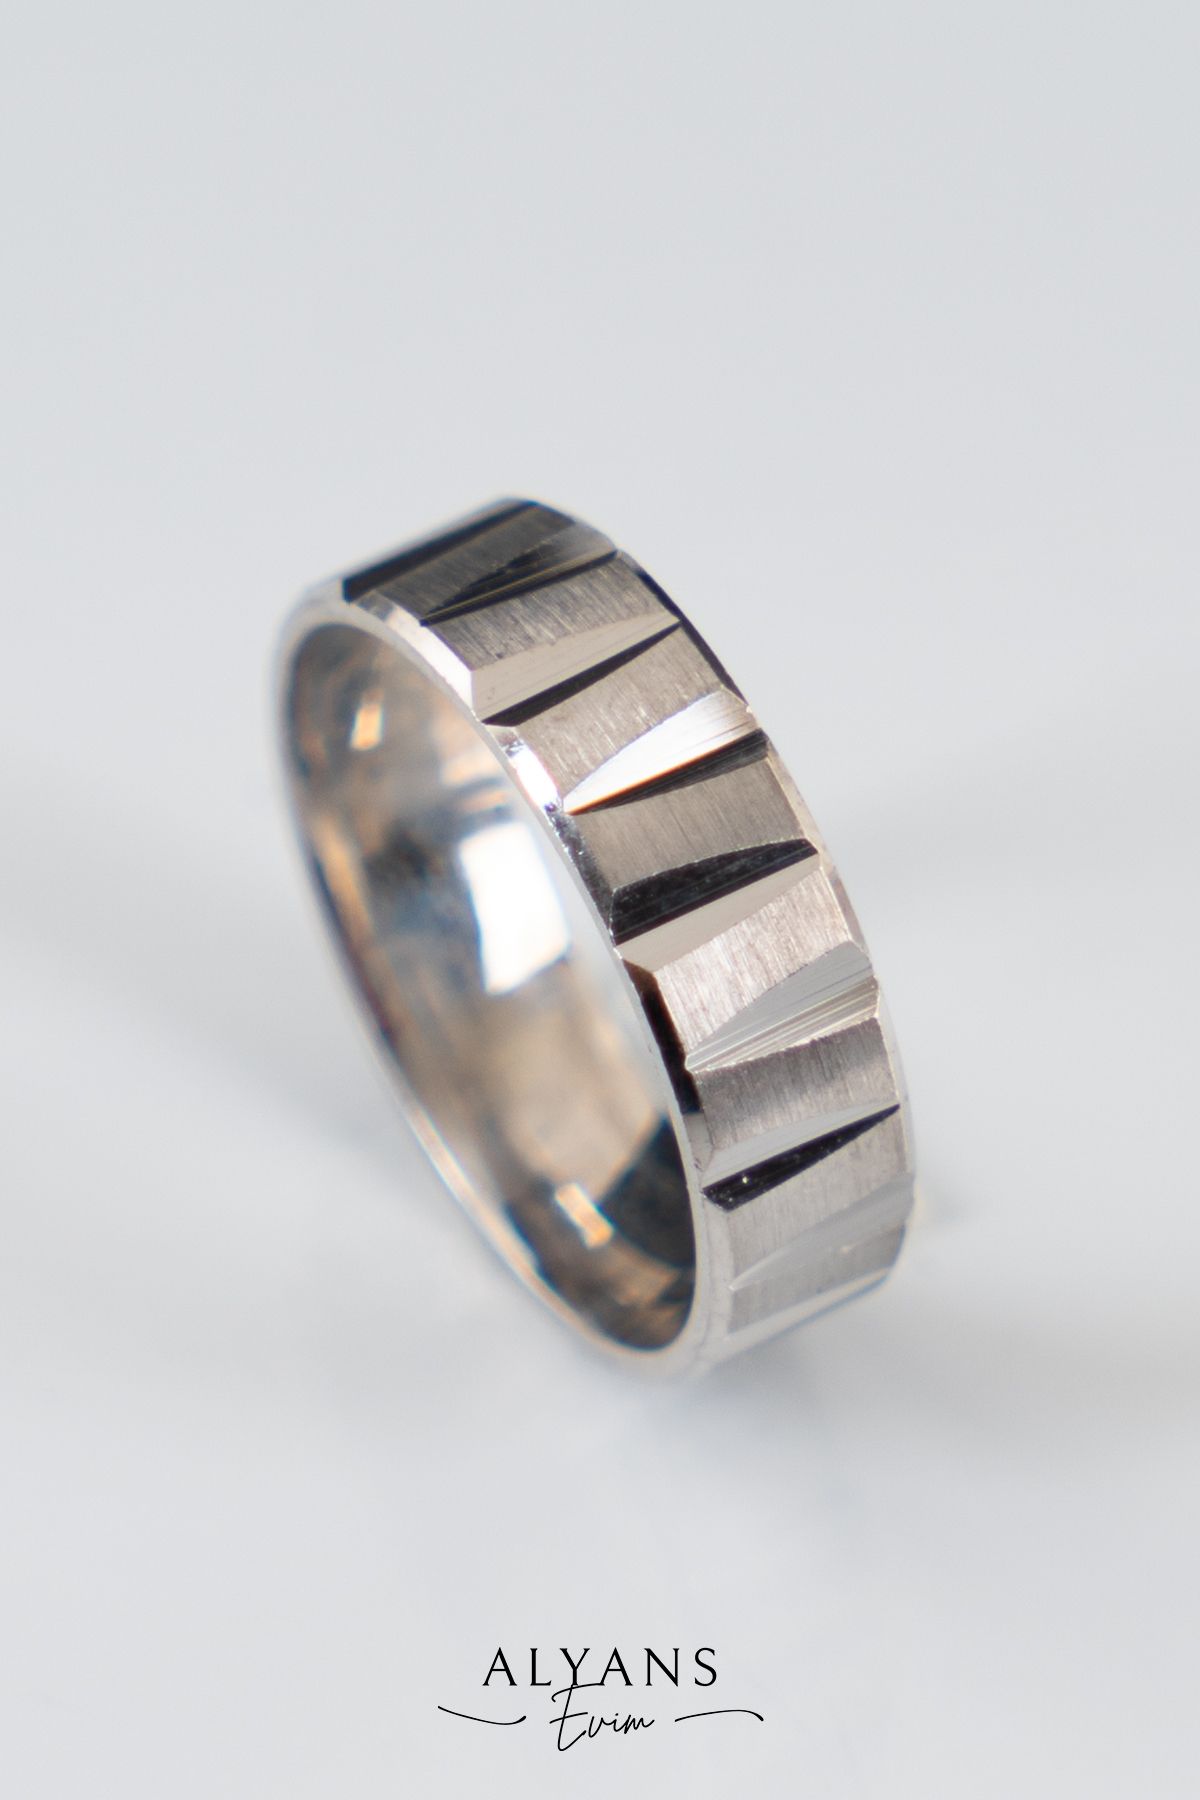 Bora Değerli Madenler 6mm Çivi Model Gümüş Alyans , Nişan Yüzüğü , Çift Alyans , 925 Ayar Gümüş Alyans